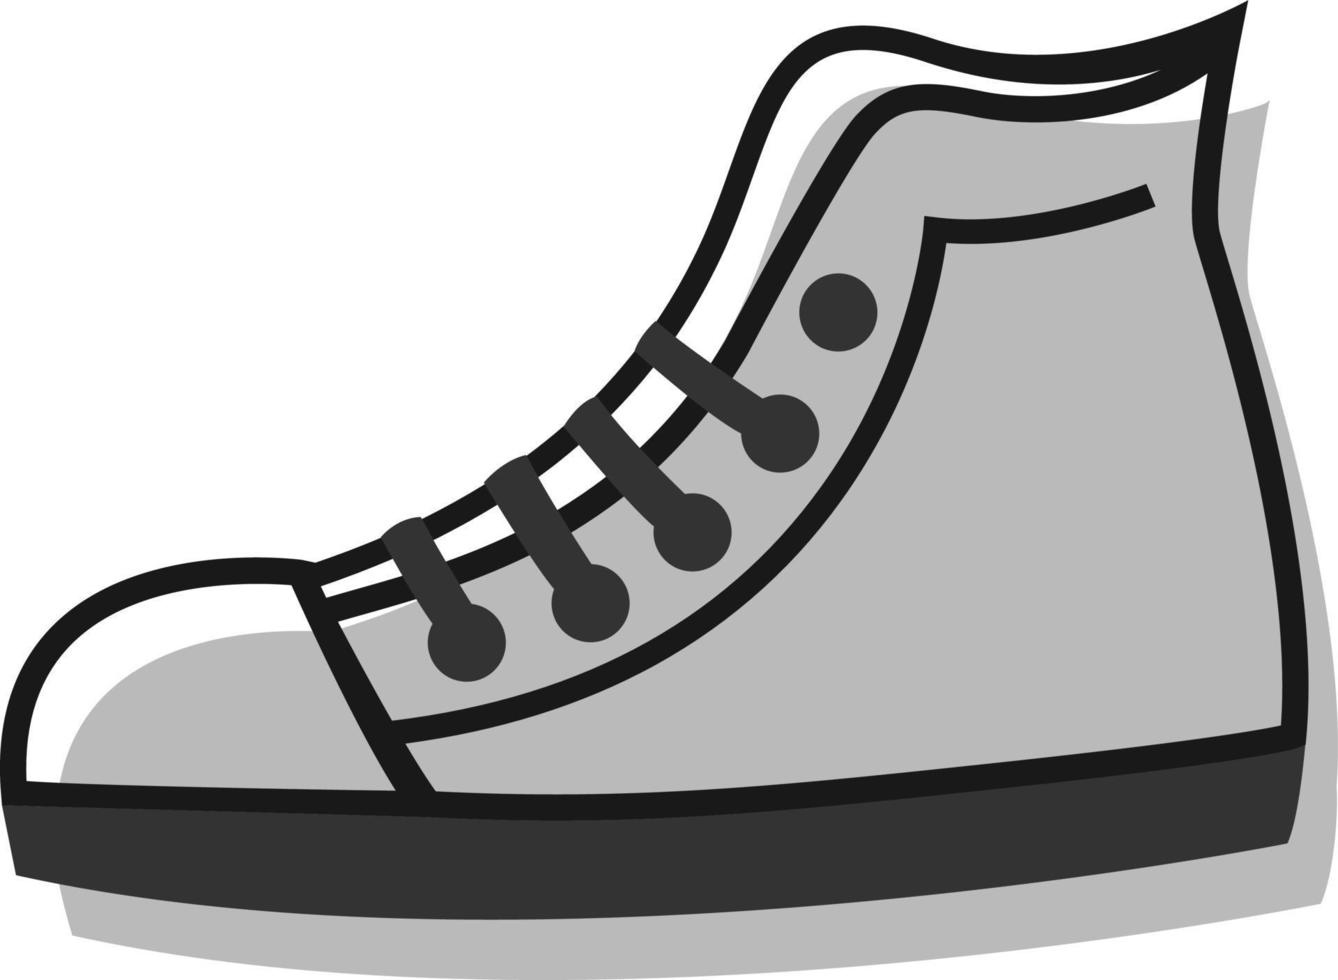 chaussures de course, illustration, vecteur sur fond blanc.